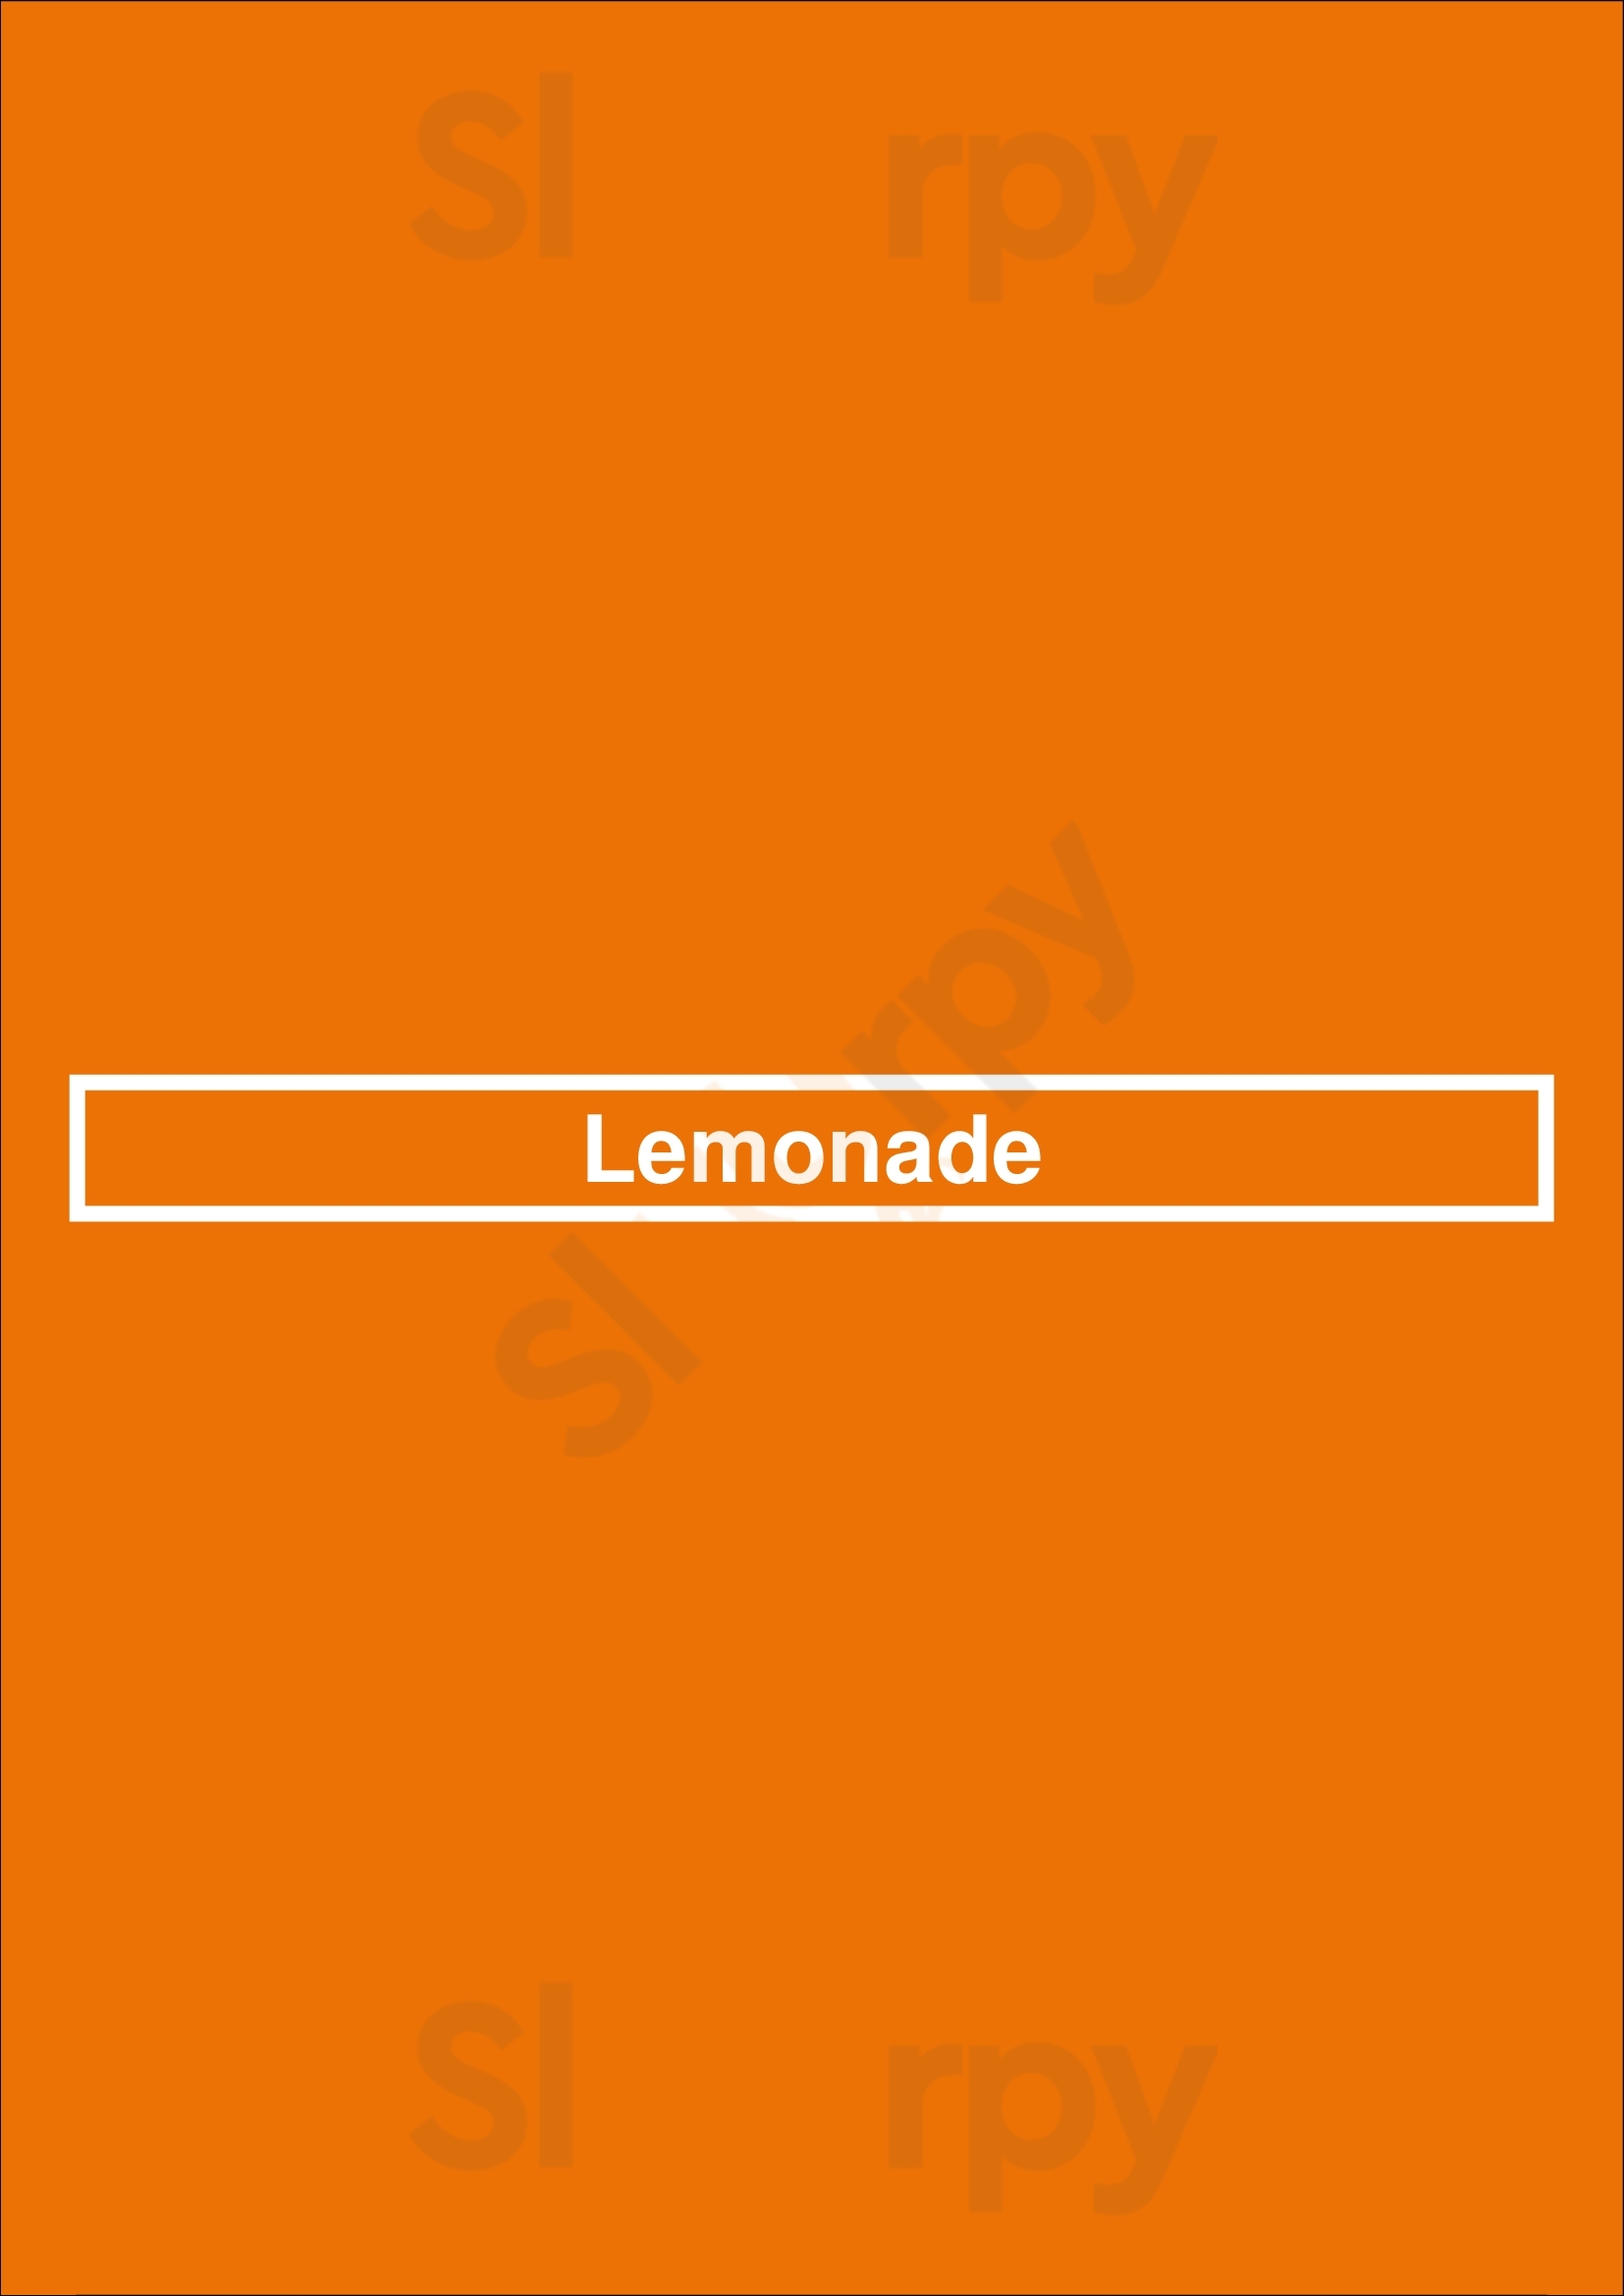 Lemonade Newport Beach Menu - 1